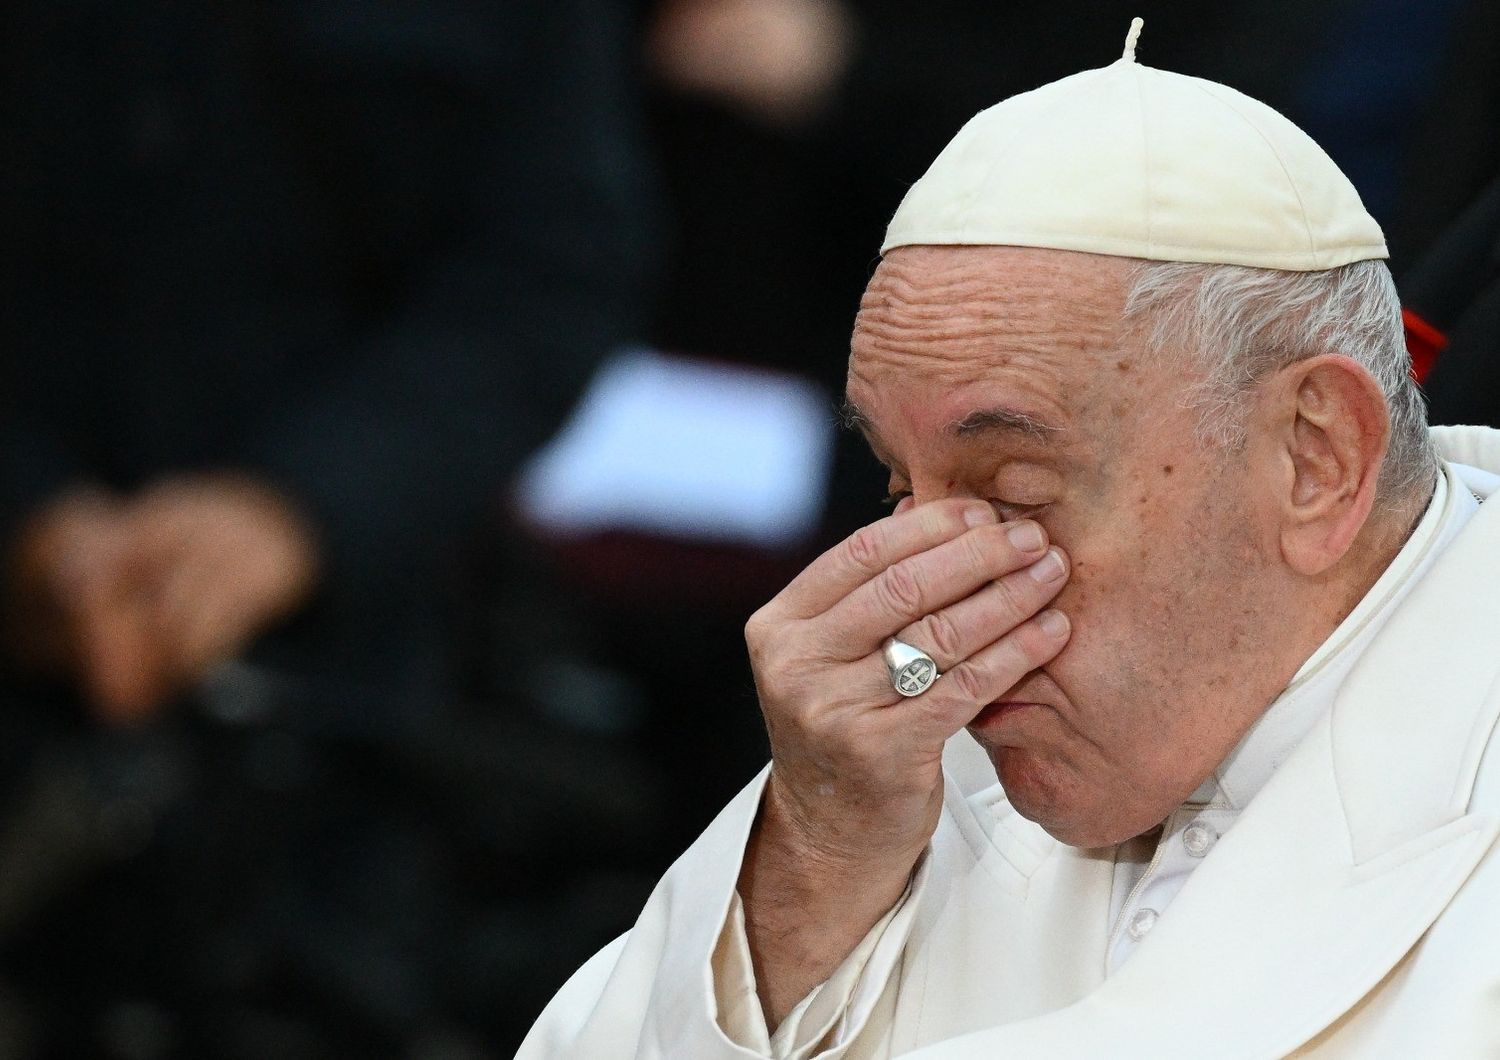 immacolata papa invoca pace e commuove